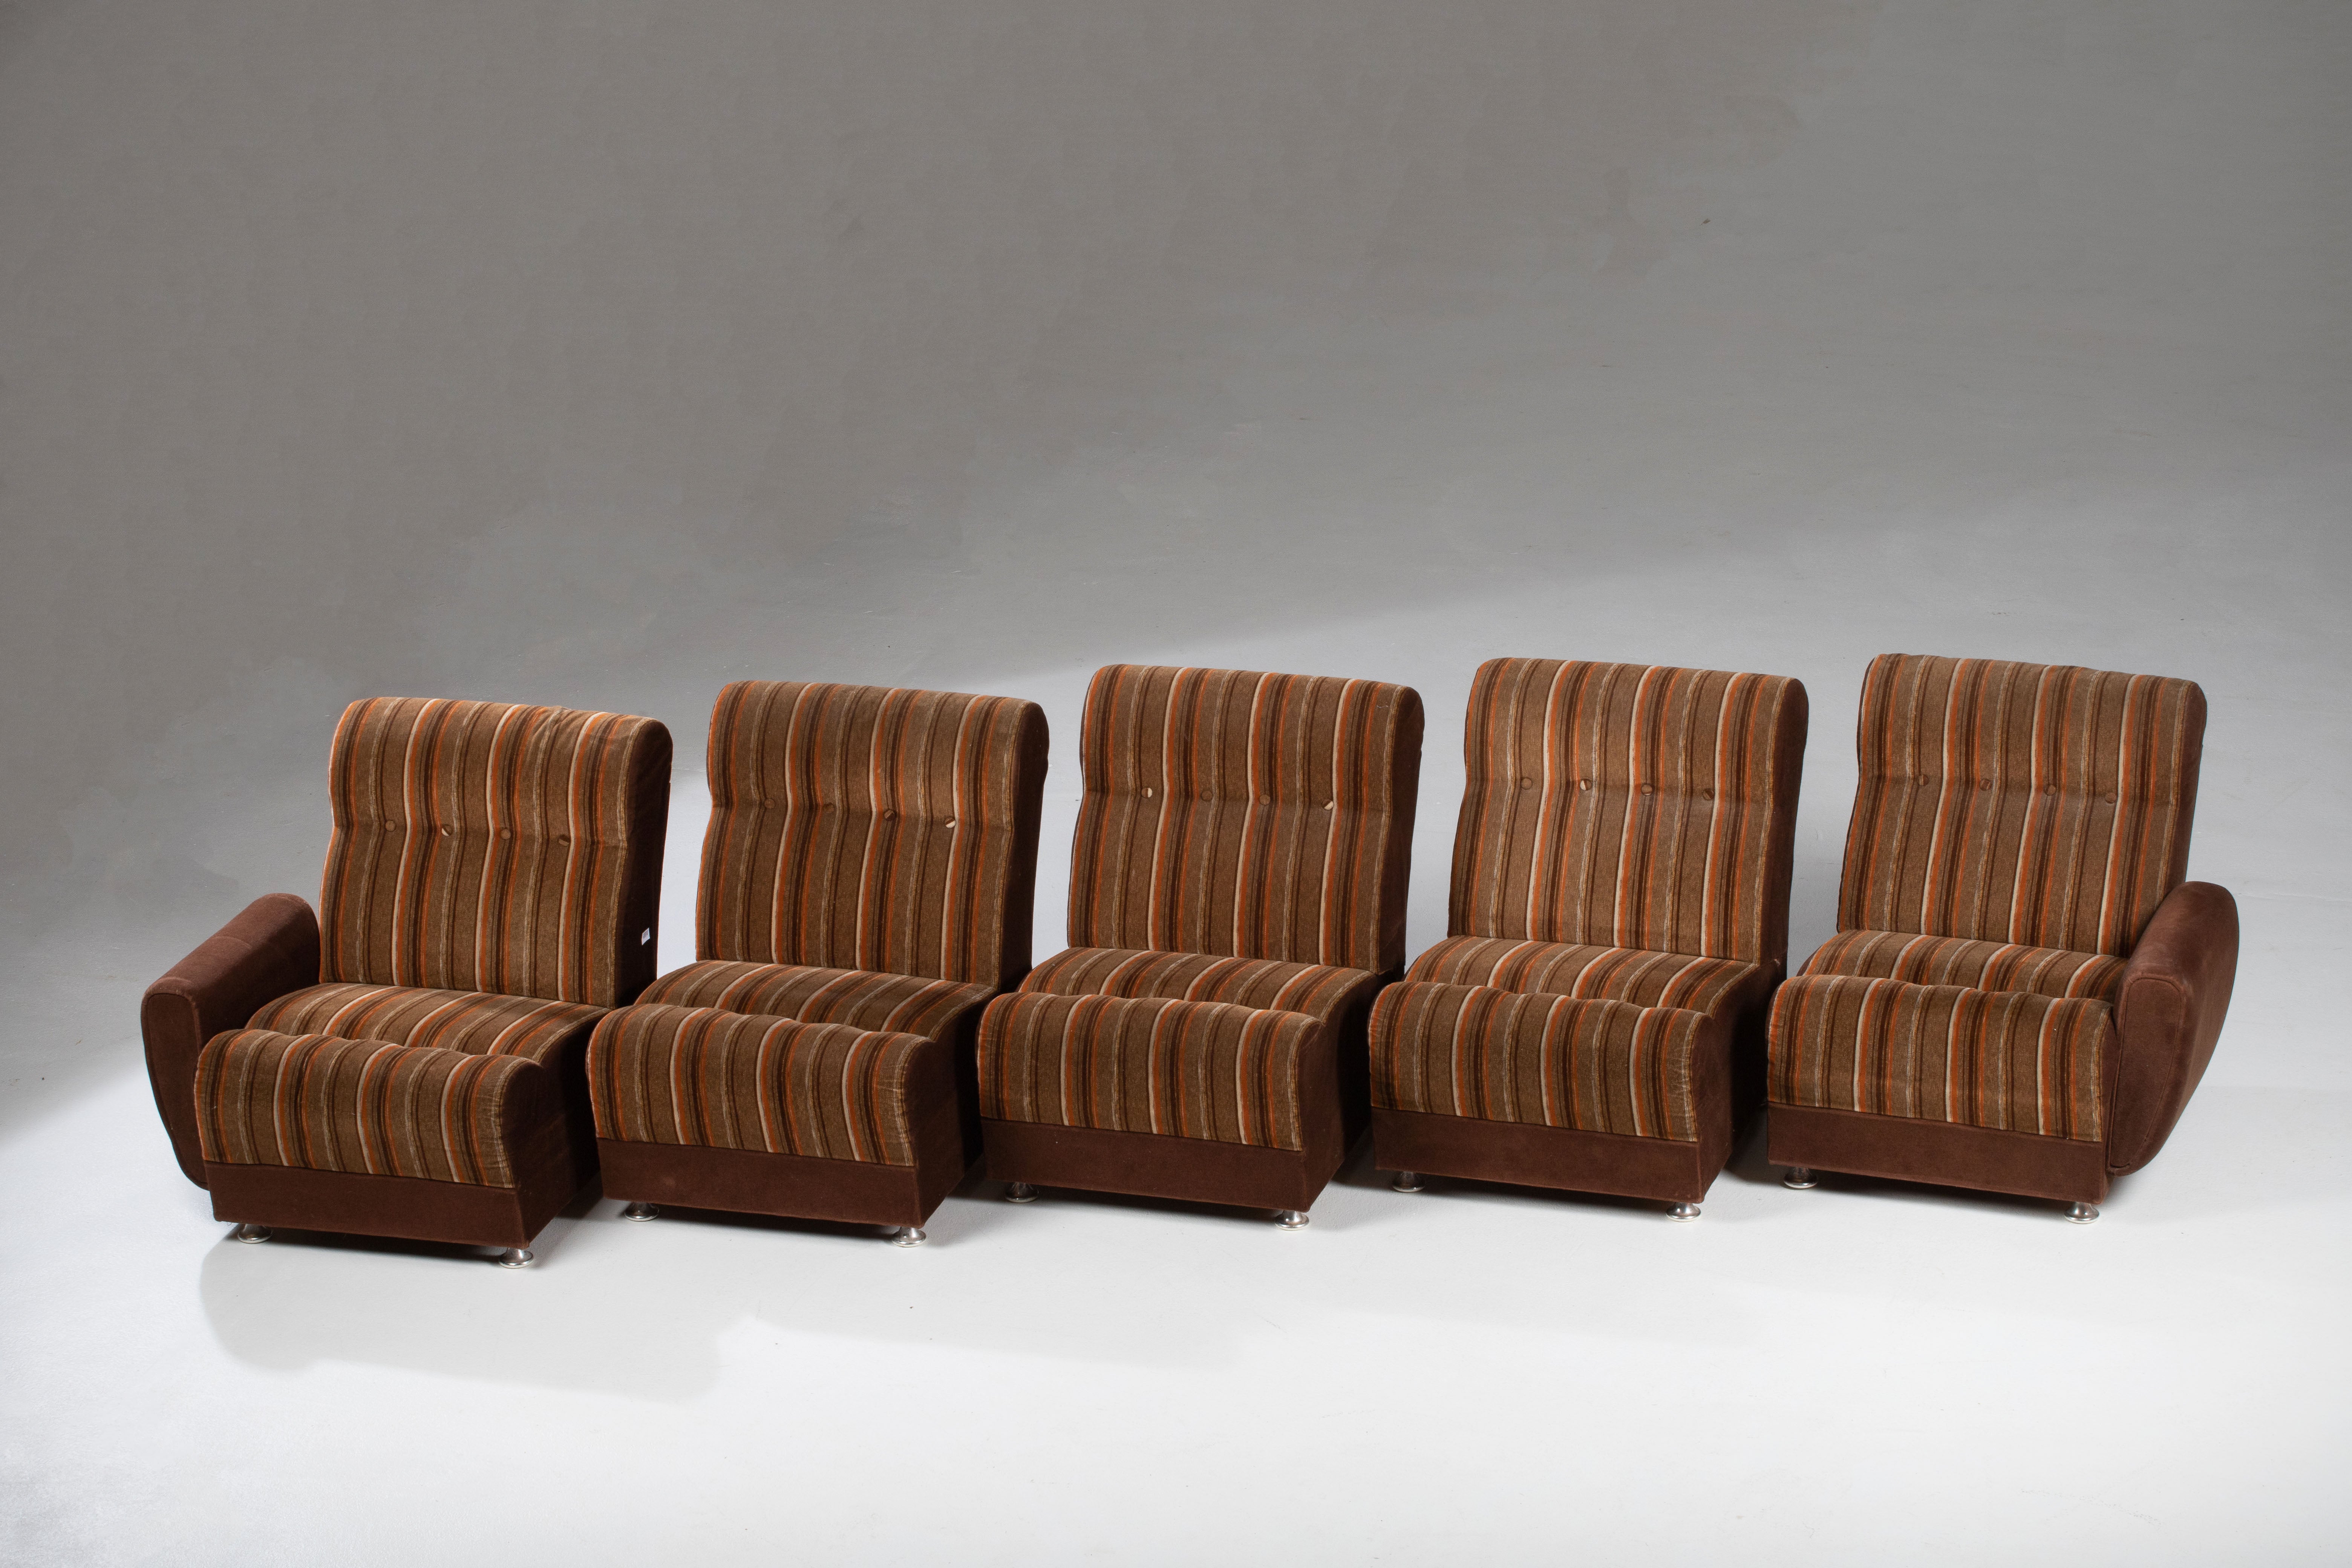 Canapé modulaire du milieu du siècle dans un tissu brun des années 1970.
Se compose de cinq sections.

Bon état vintage avec usure mineure.
 